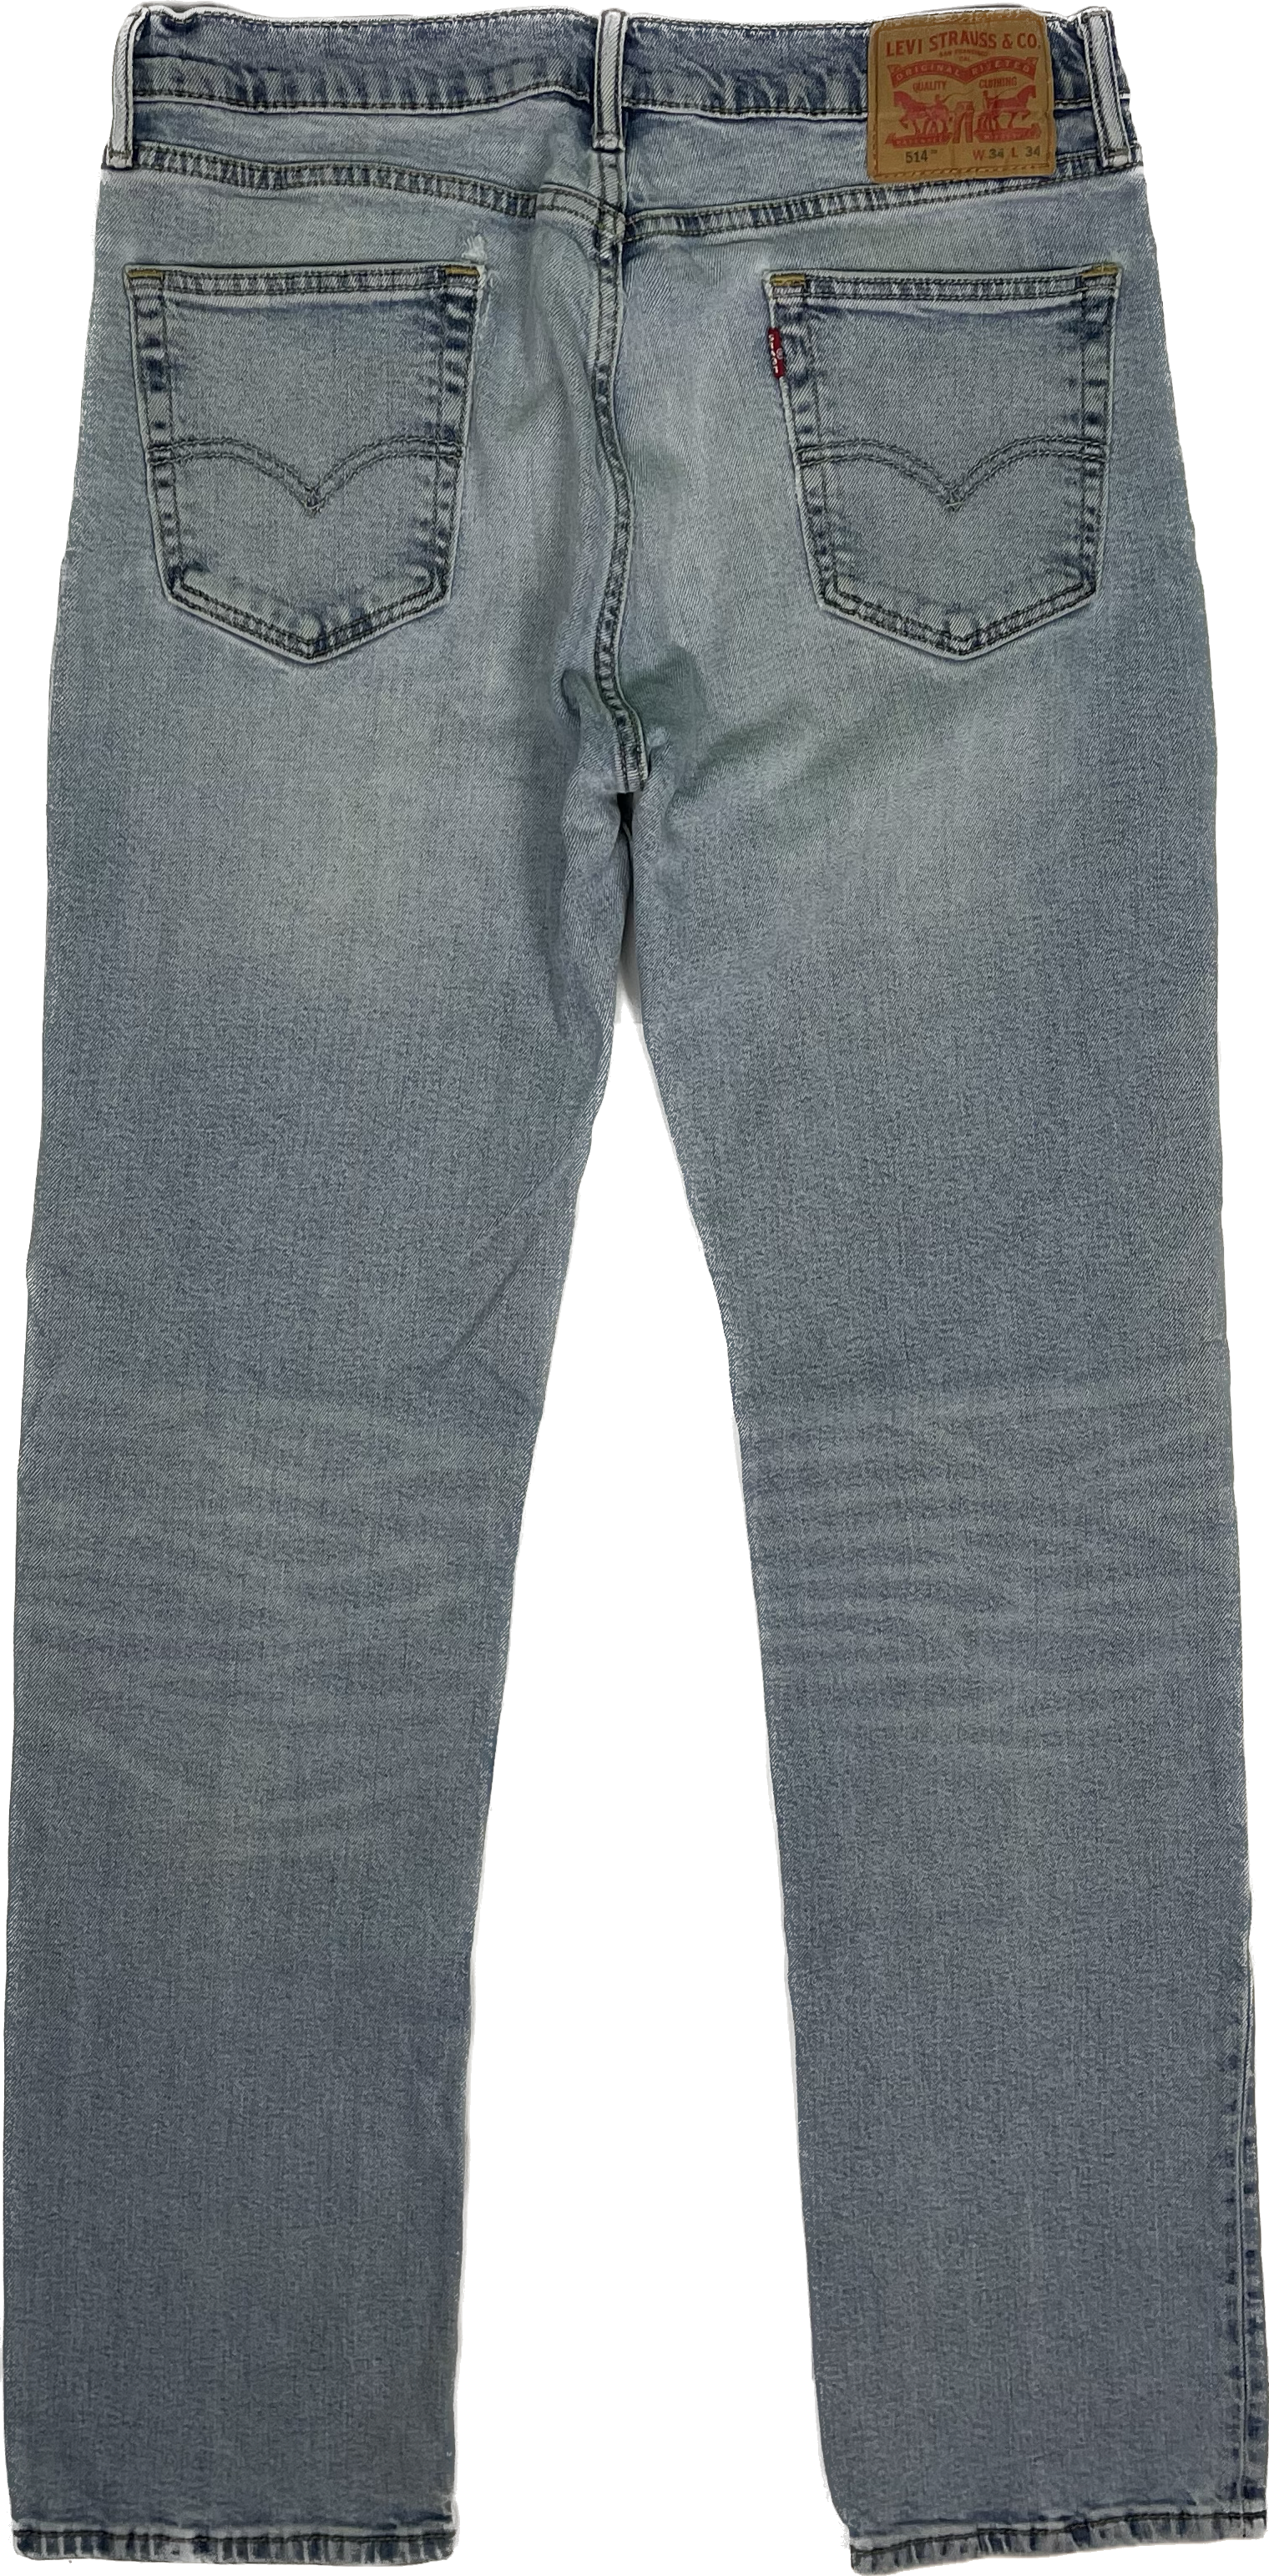 Levis 514 Jeans